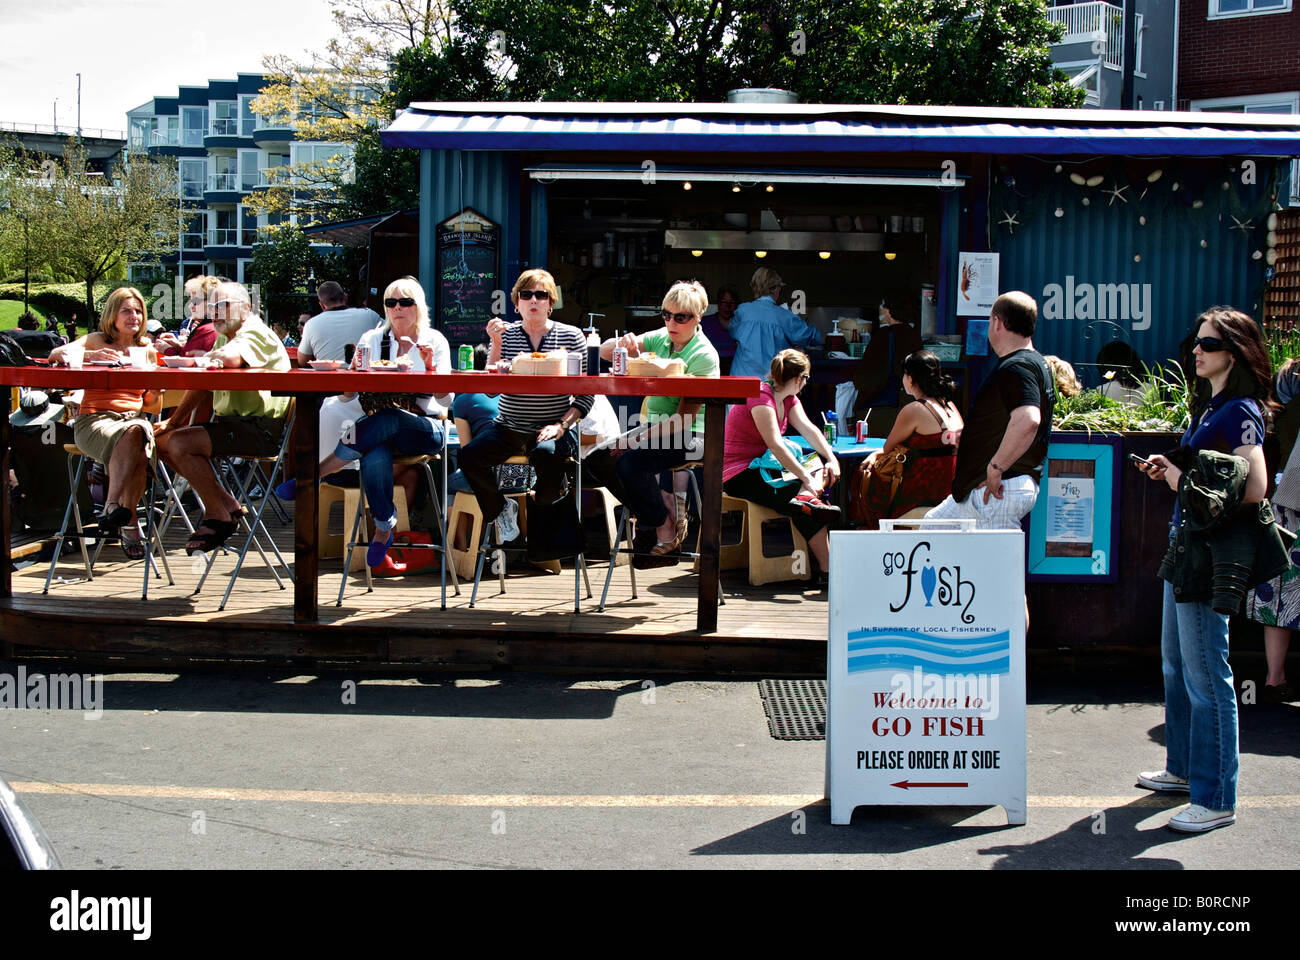 Patroni di un popolare pesce all'aperto e di chip shop che si affaccia l'ingresso a Vancouver è False Creek waterfront. Foto Stock